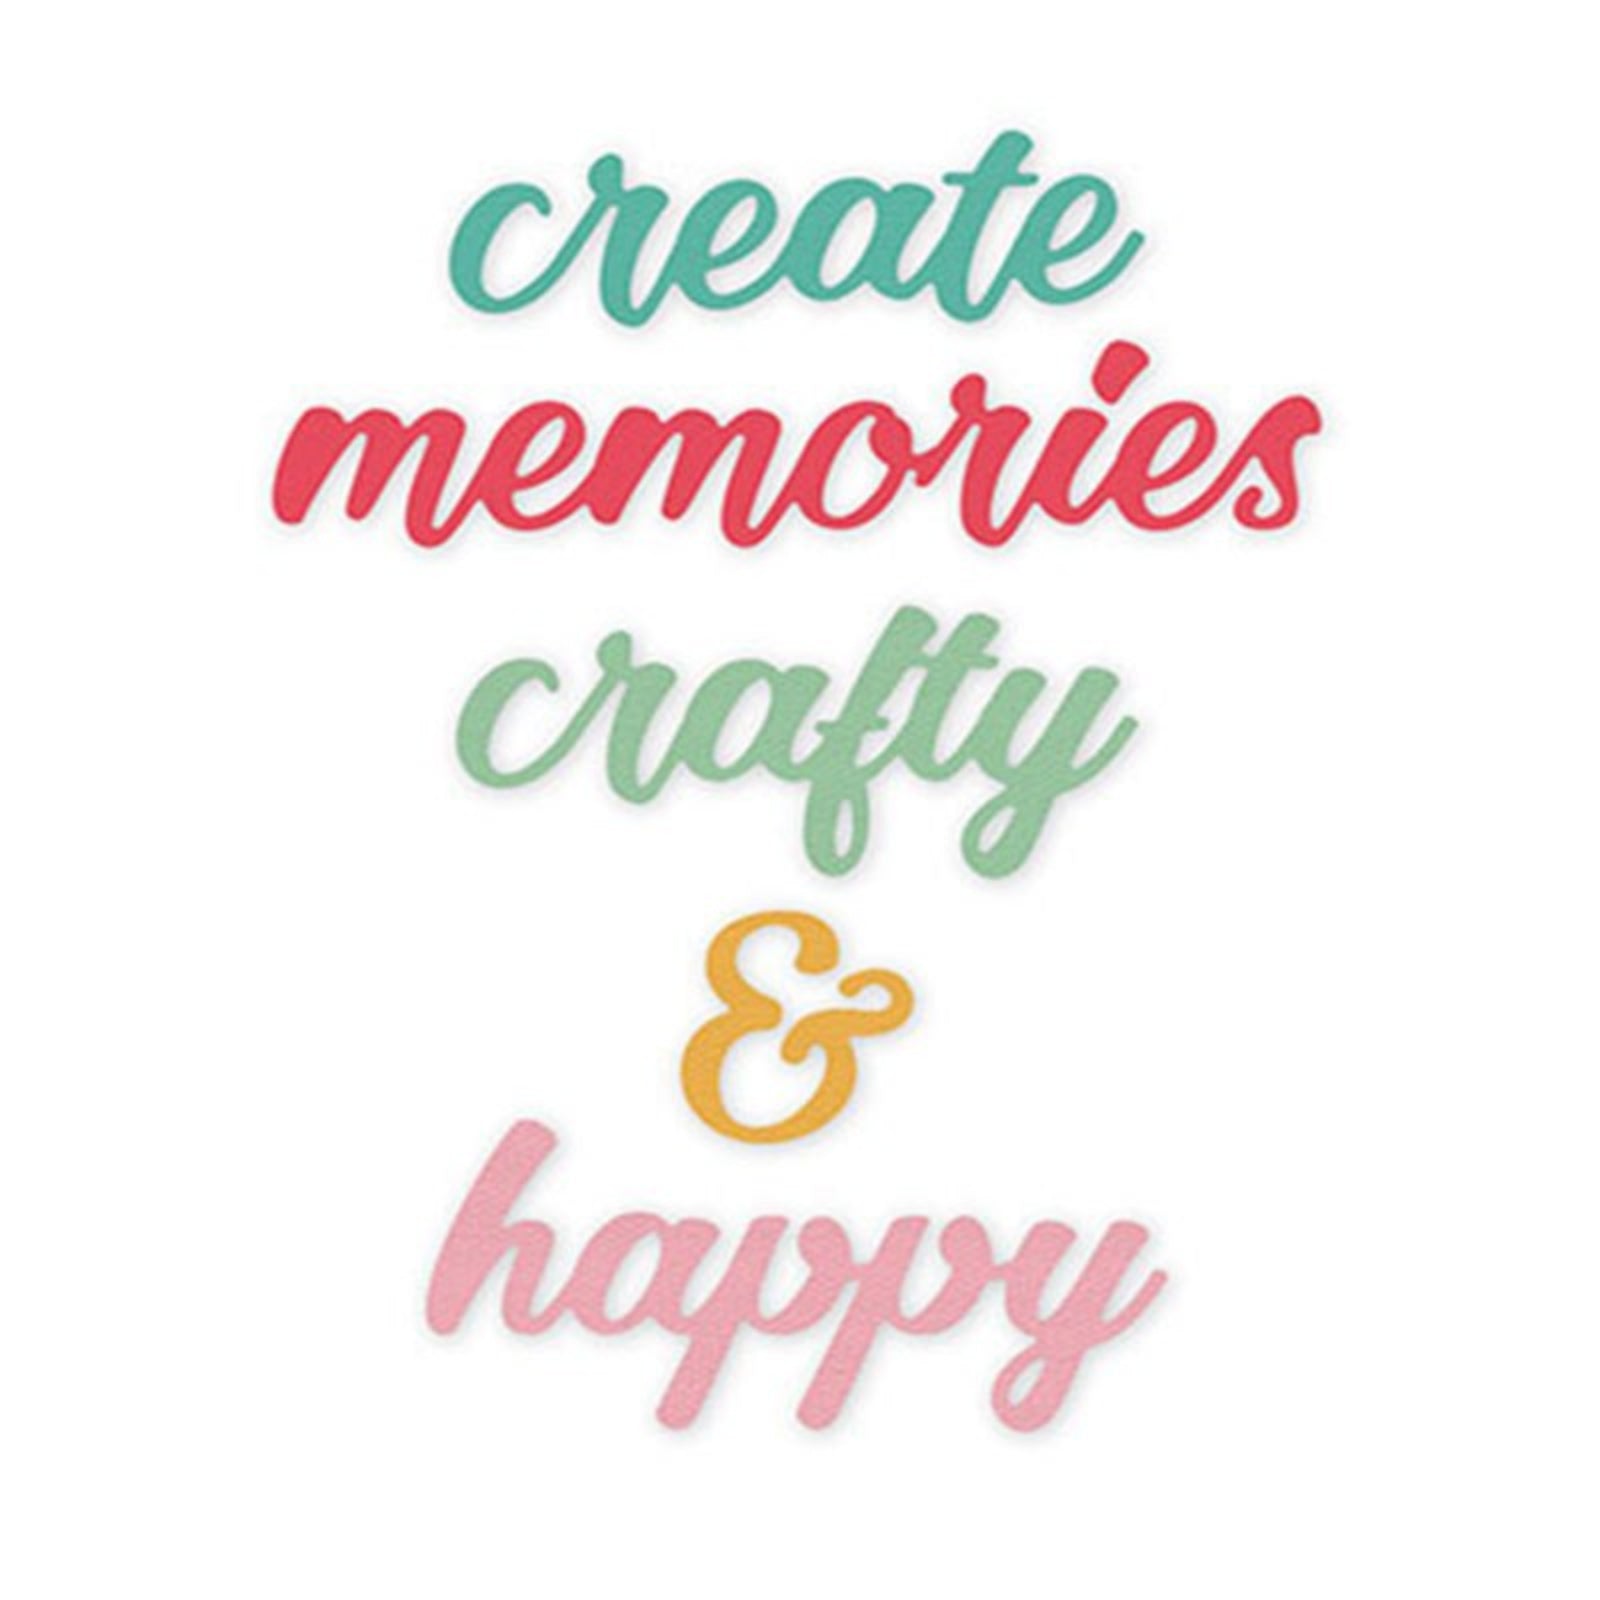 Create Happy Crafty Memories Script Words Cutting Dies